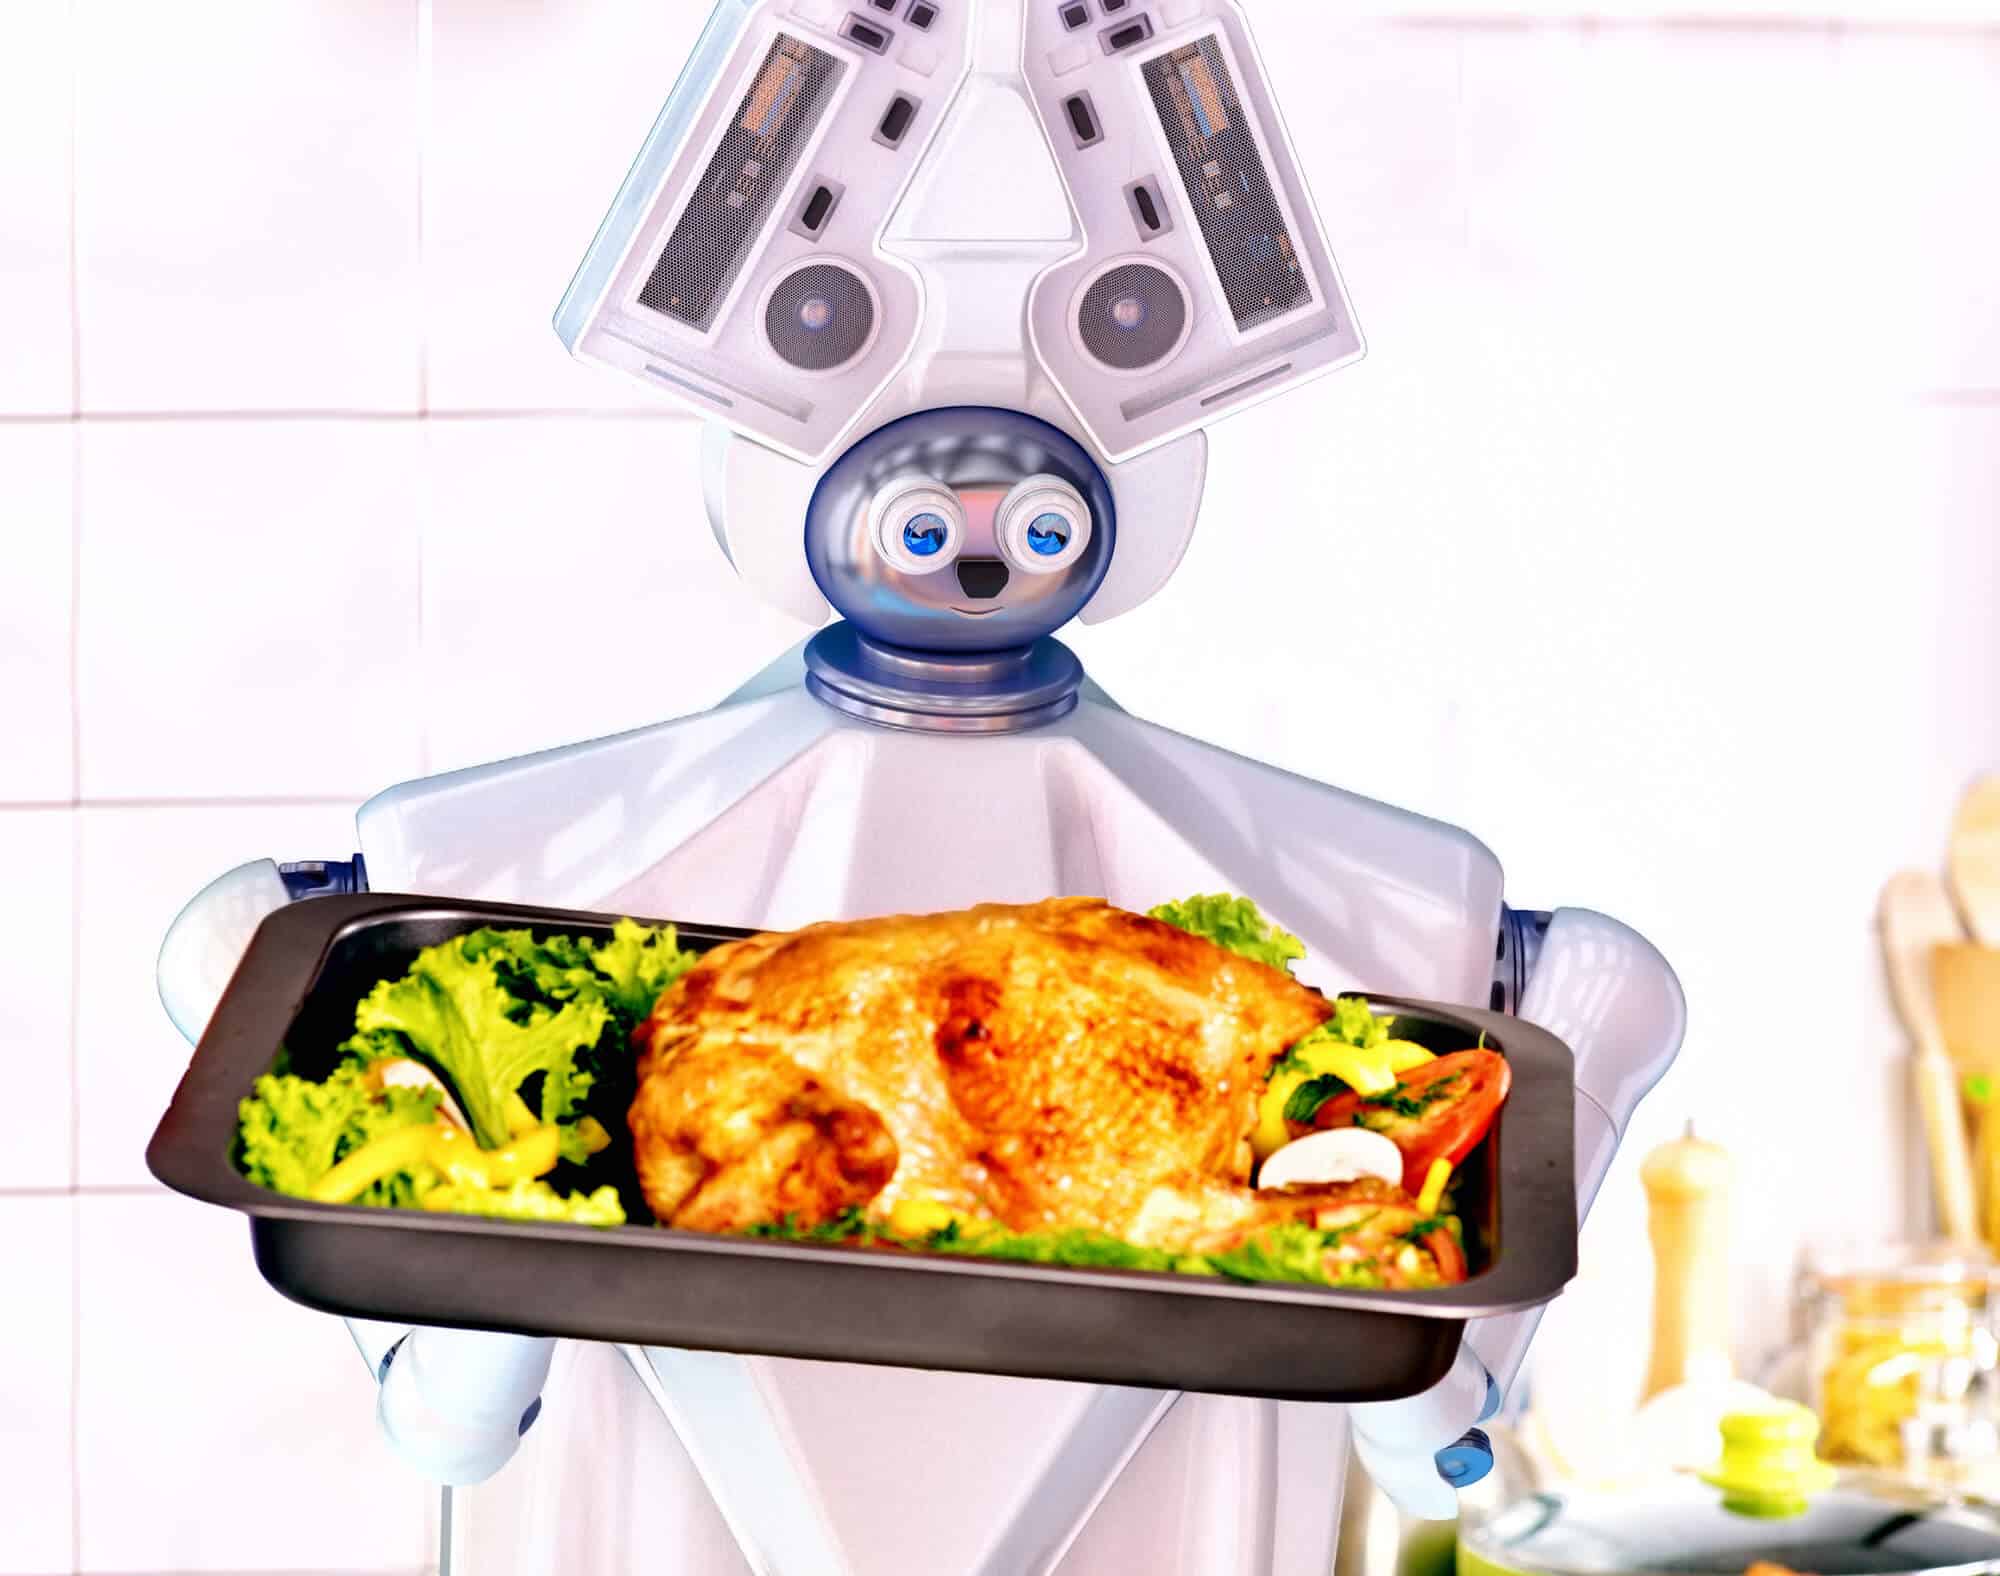 רובוט משרת במטבח. <a href="https://depositphotos.com. ">צילום: depositphotos.com</a>